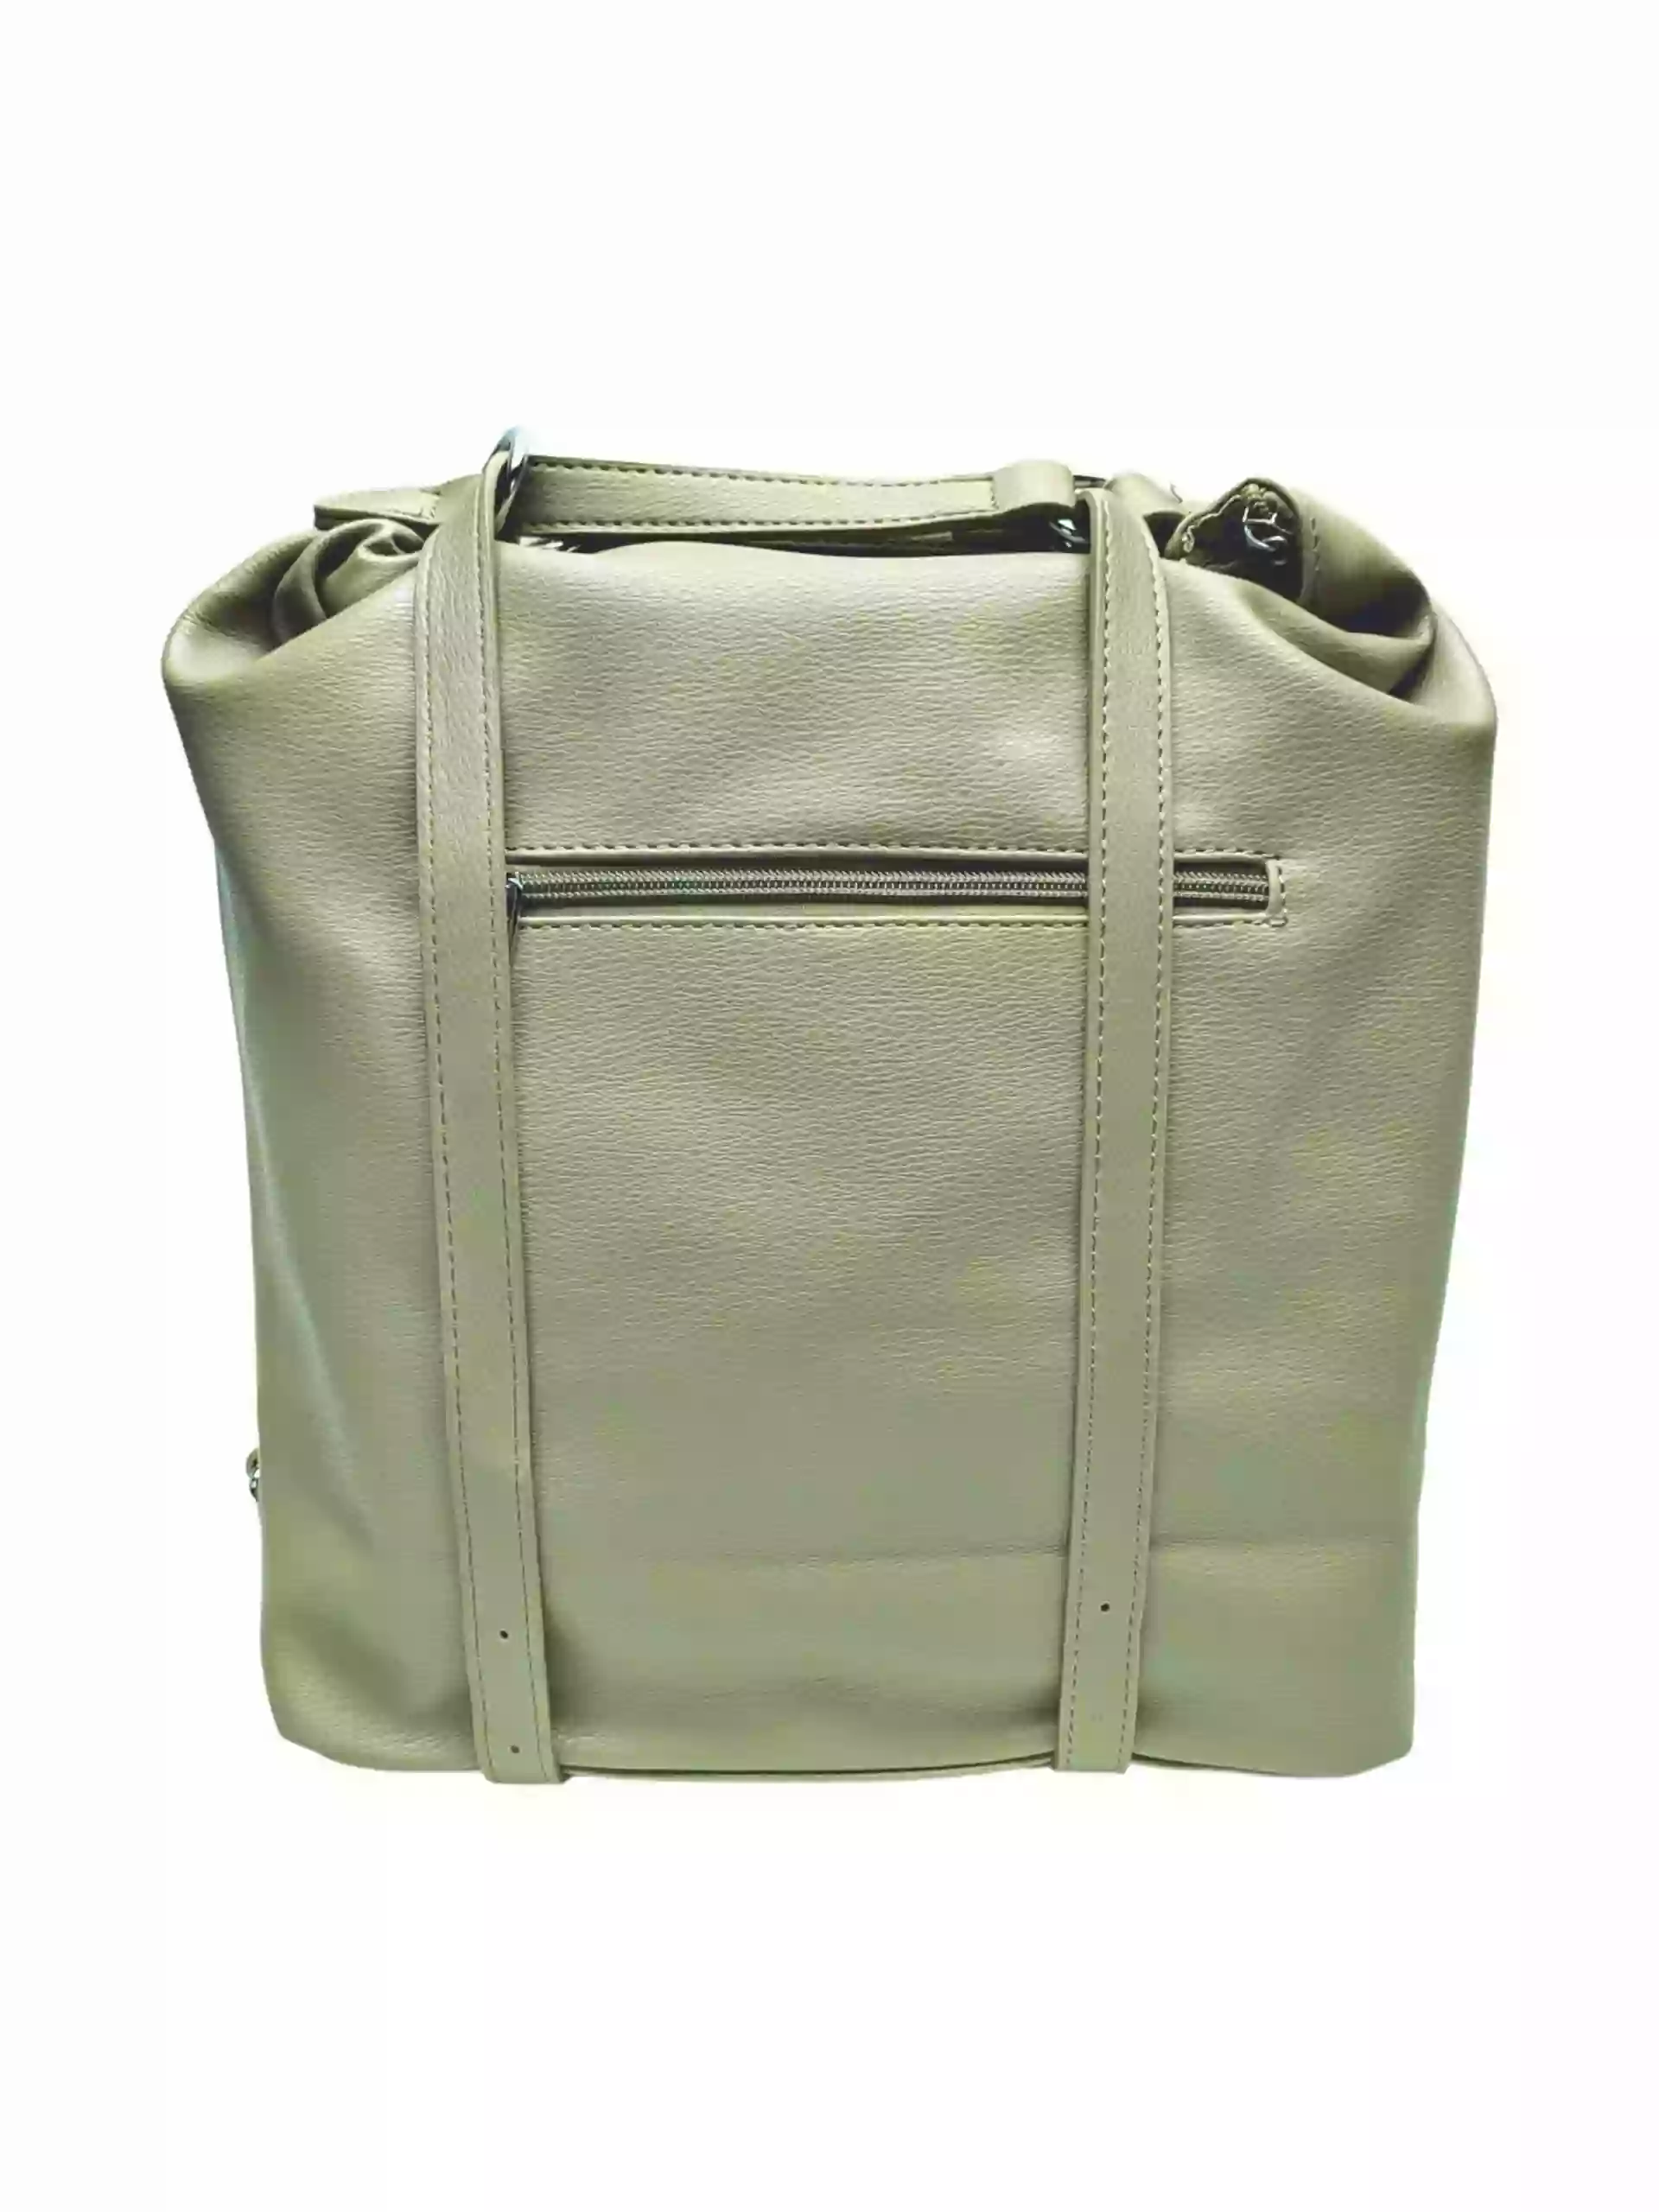 Velká khaki / hnědozelená kabelka a batoh v jednom, Tapple, X368, zadní strana kabelko-batohu 2v1 s popruhy